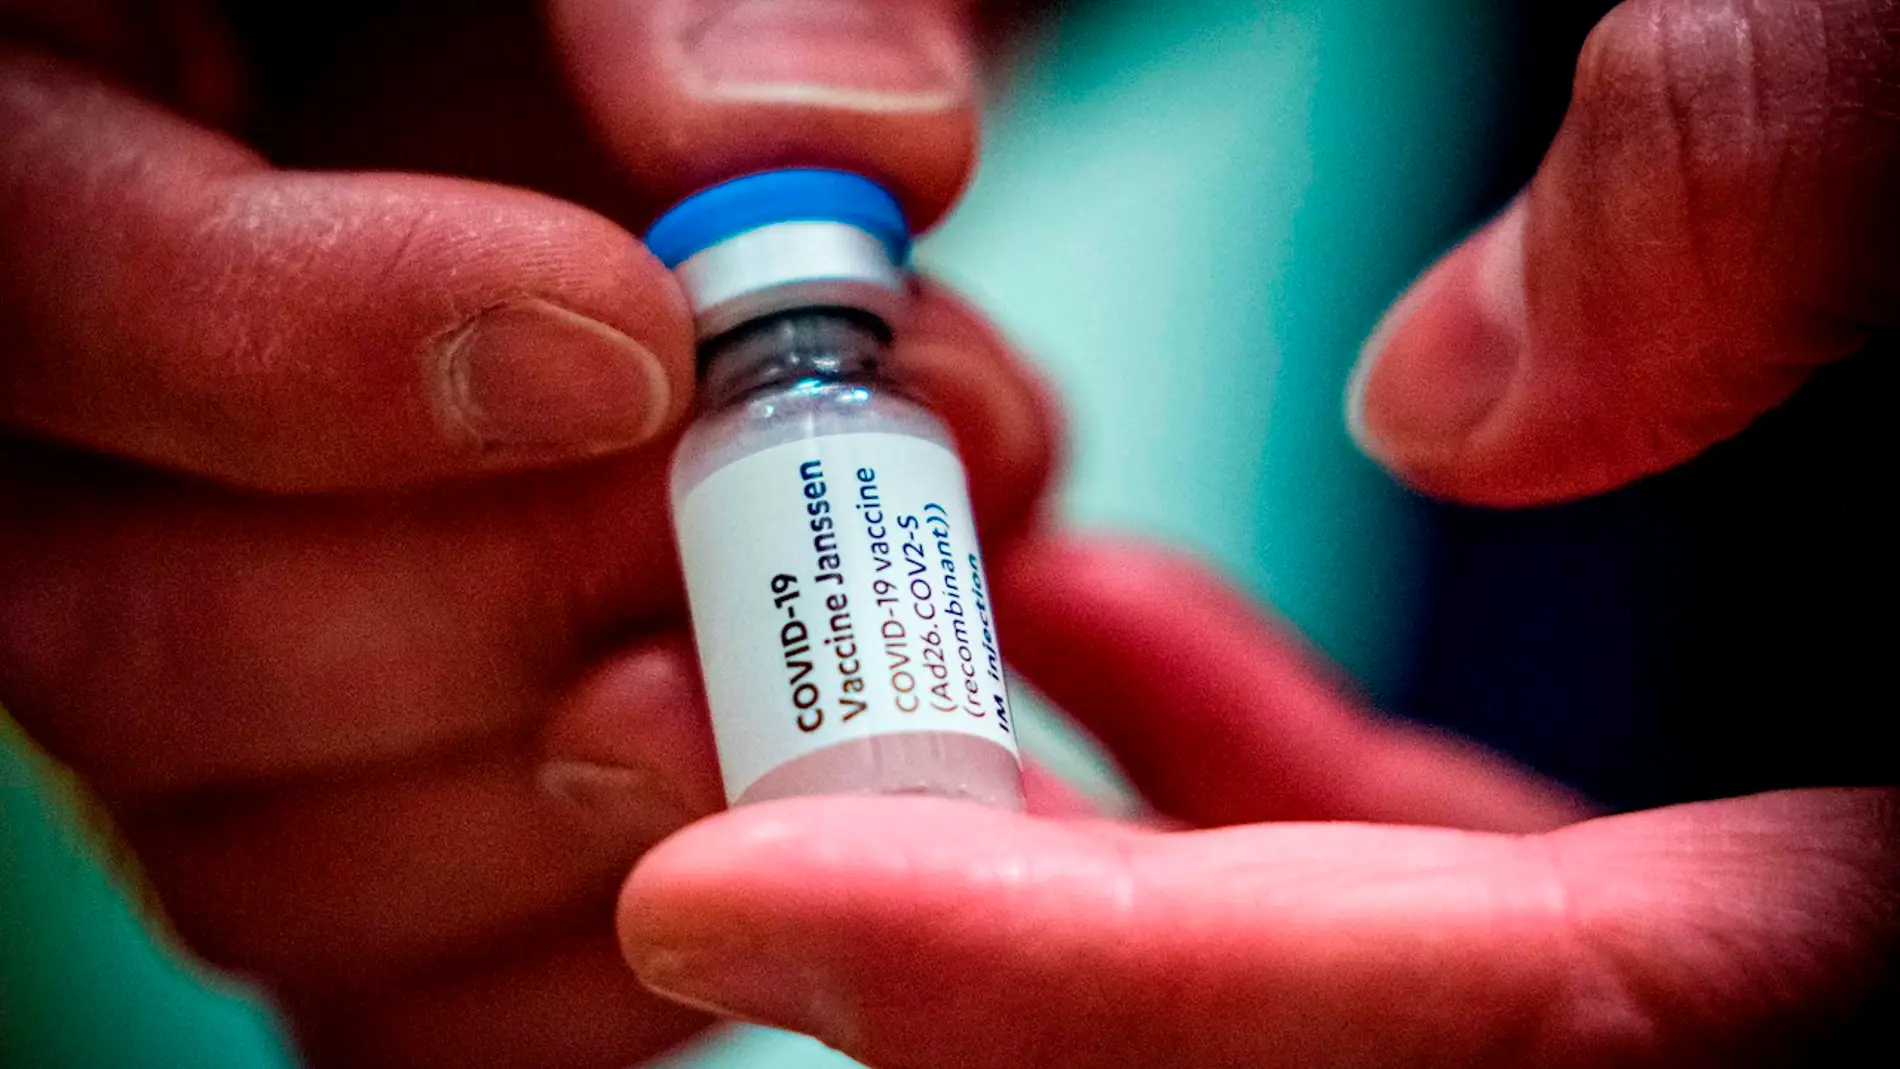 Vista de una dosis de la vacuna Janssen contra la covid-19